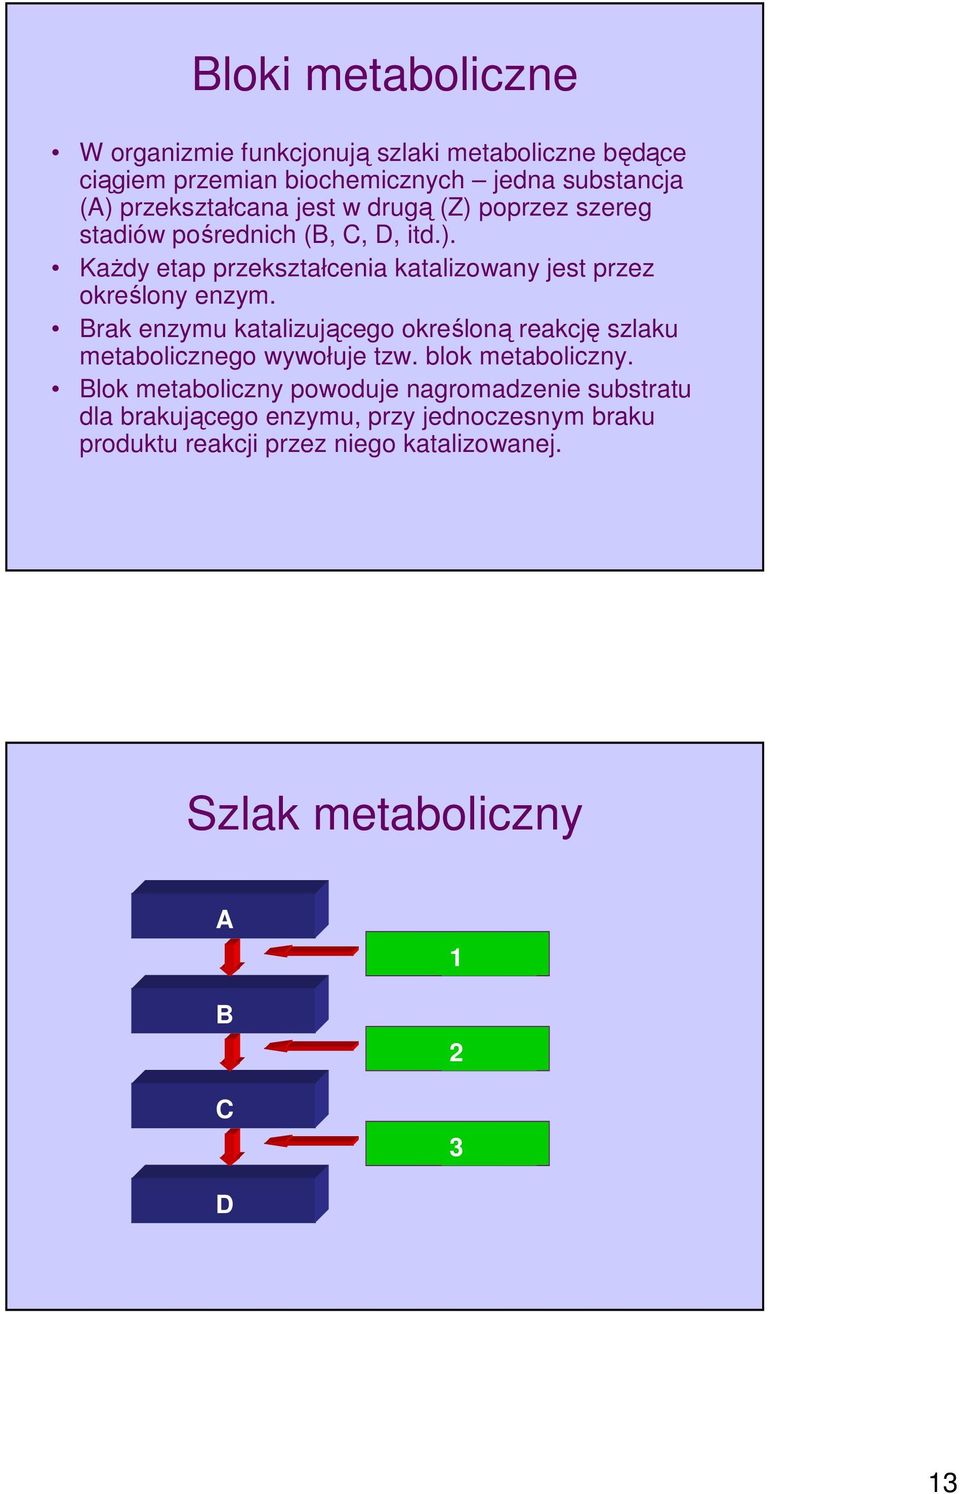 Brak enzymu katalizującego określoną reakcję szlaku metabolicznego wywołuje tzw. blok metaboliczny.